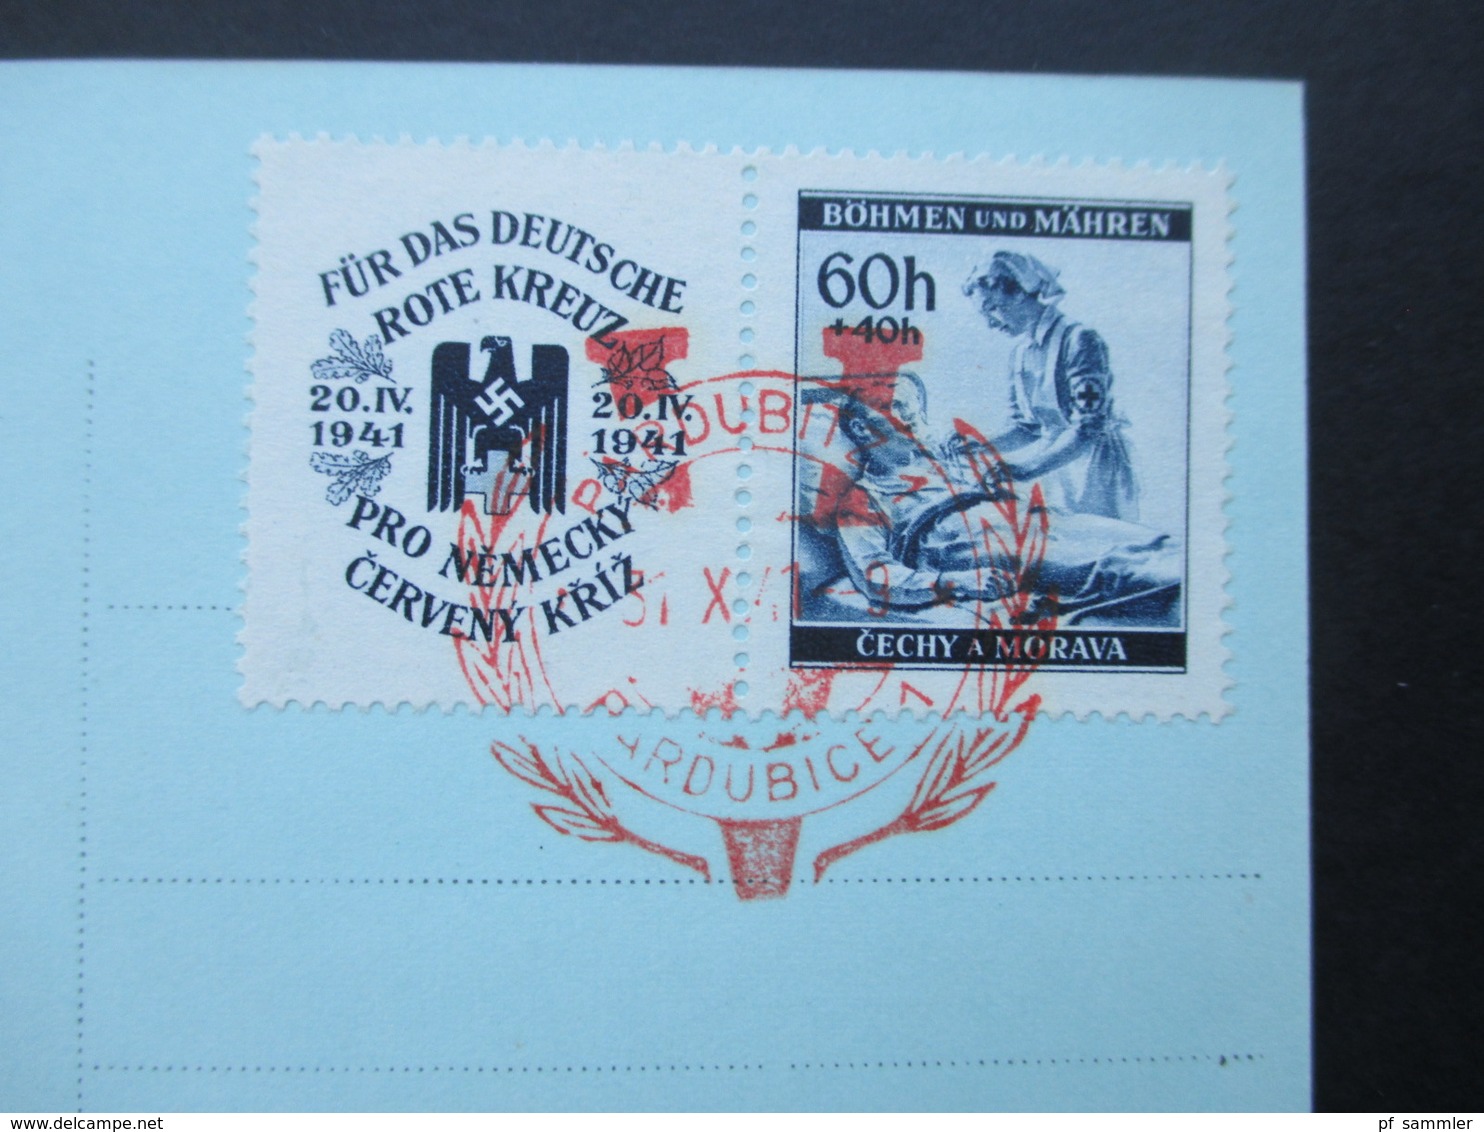 Böhmen Und Mähren 1941 Nr. 62 Zf Echtofoto Postkarte Pardubitz. Roter Sonderstempel 31.X..41 - Lettres & Documents